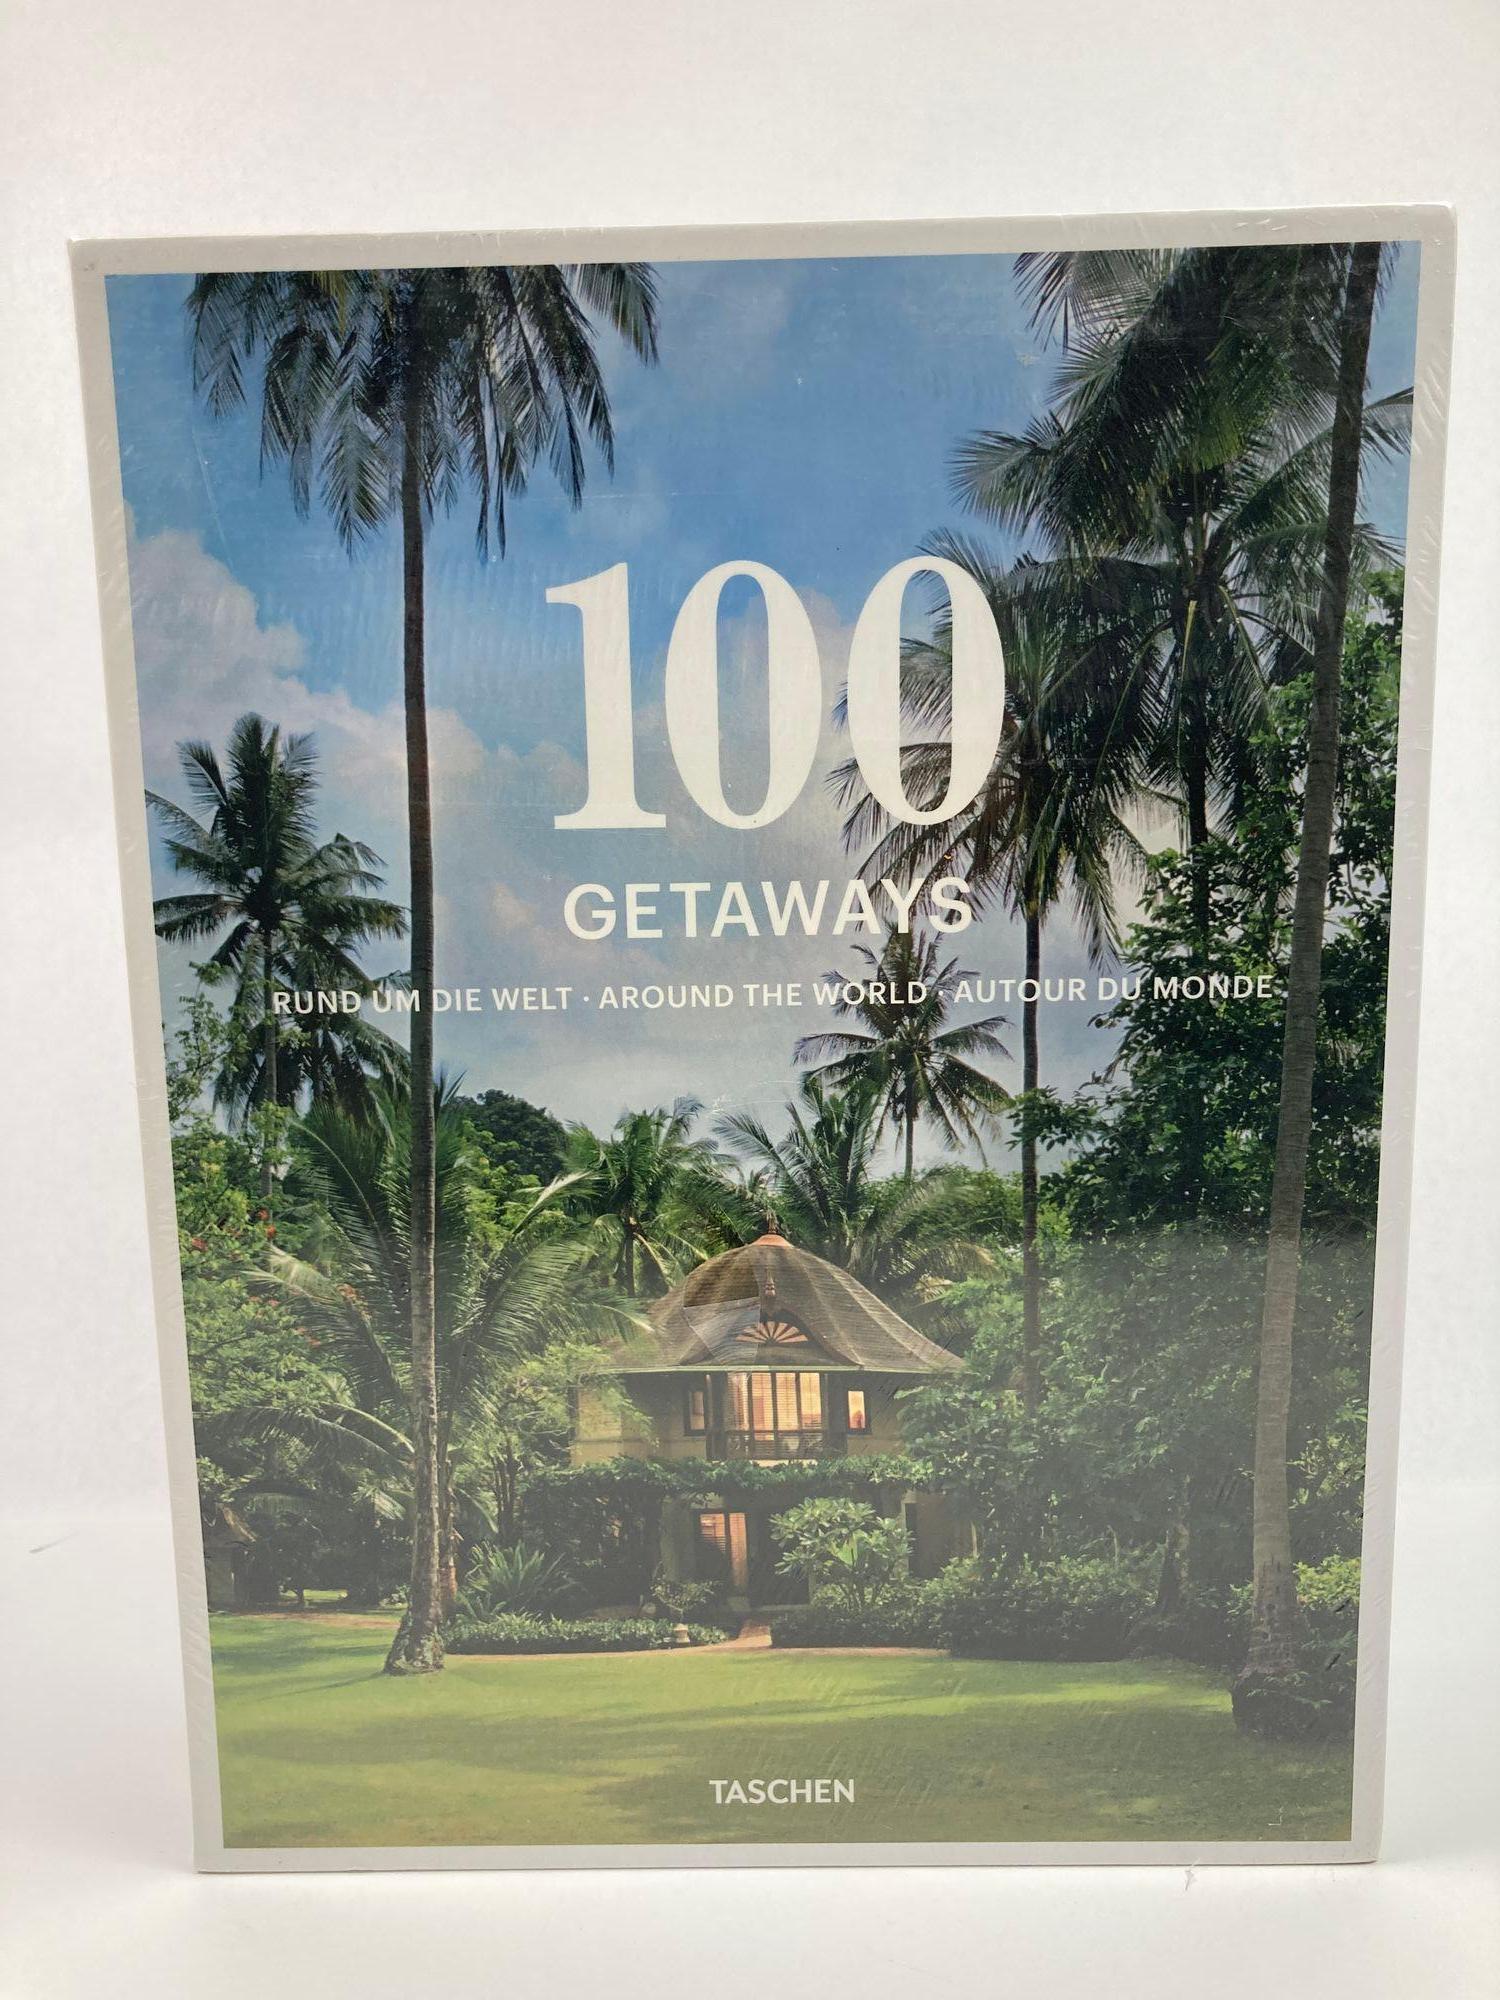 100 Getaways Around the World by Margit J. Mayer TASCHEN. 2014
Taschen 